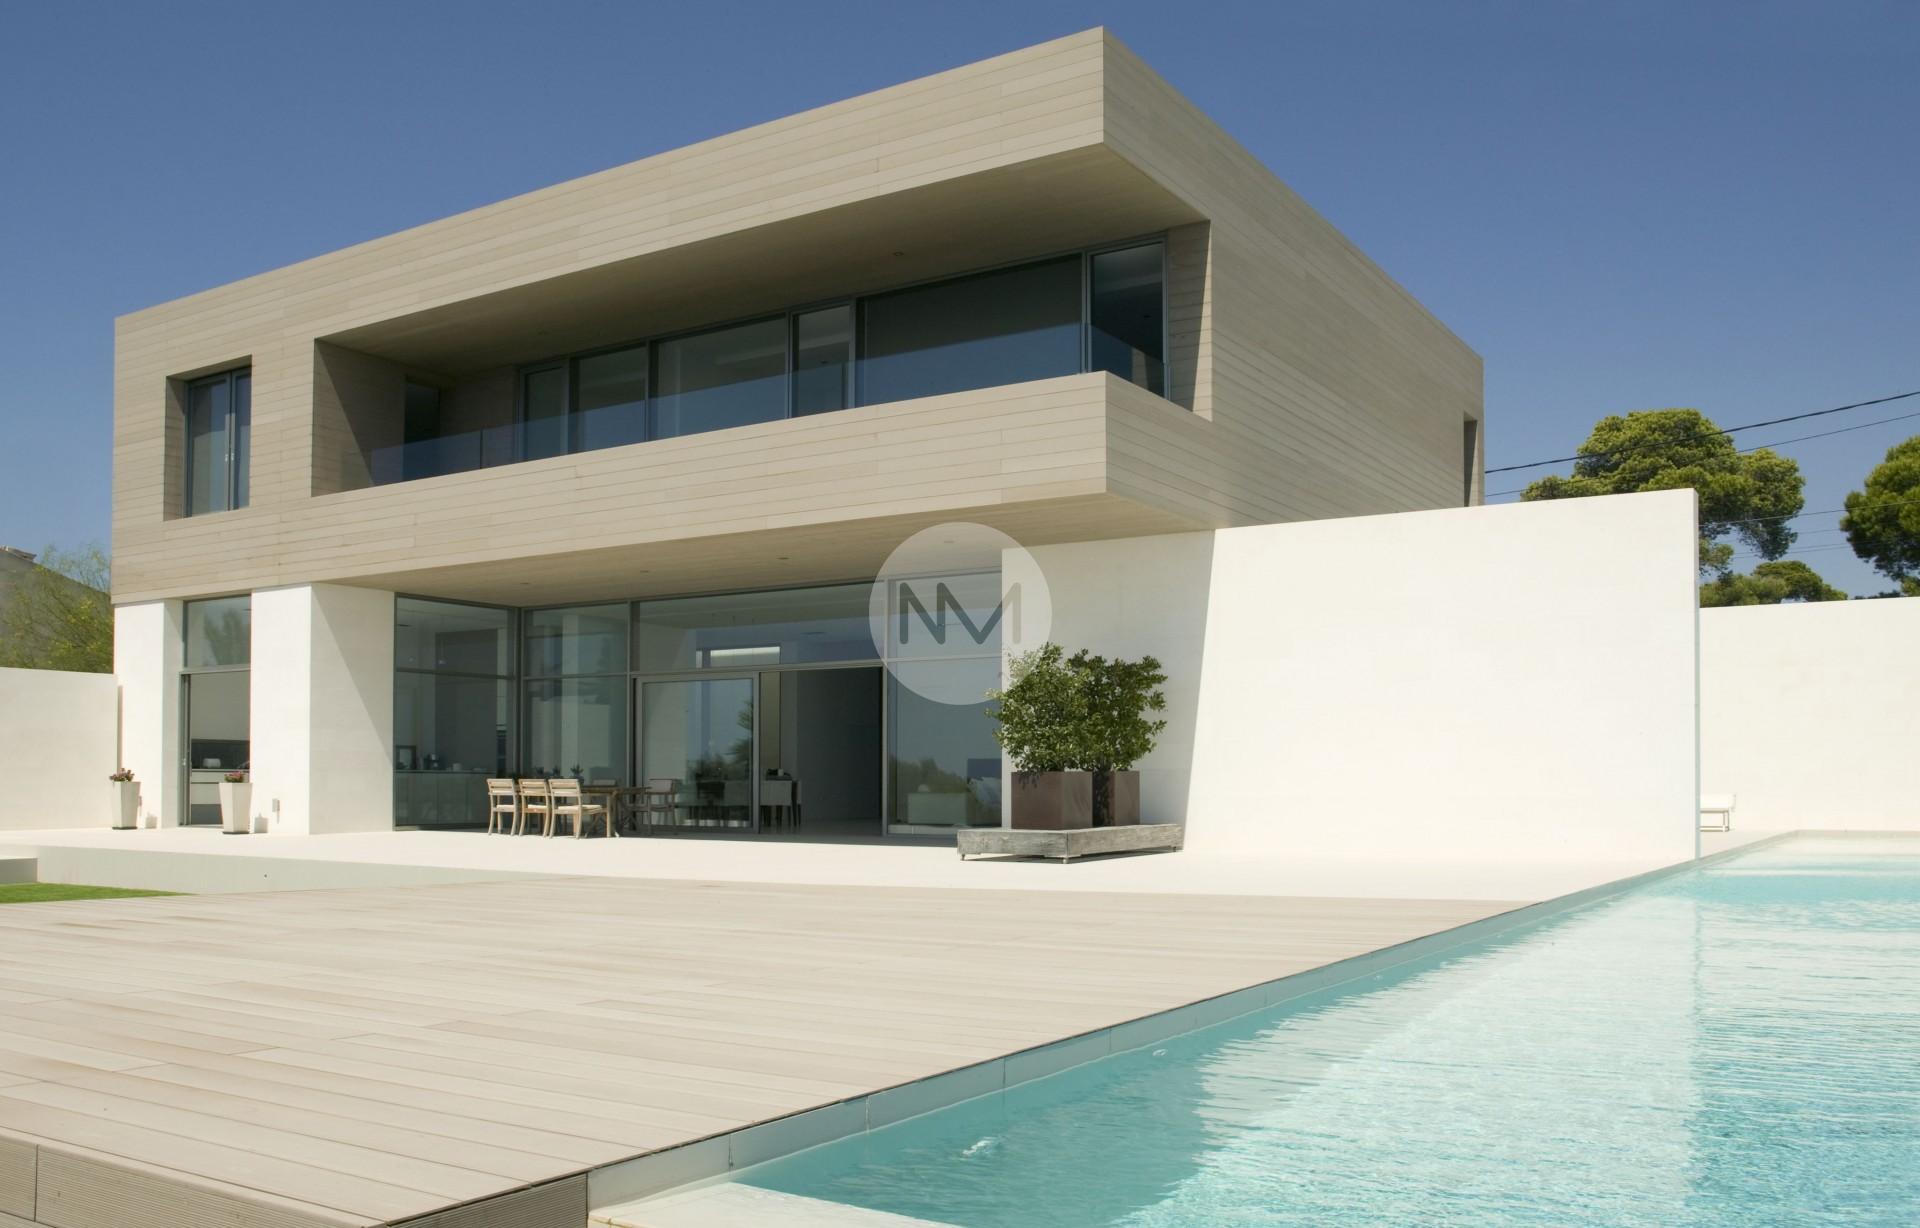 Portal Inmobiliario de Lujo en Cala Pi, presenta lujoso chalet venta en Mallorca, casa de lujo para comprar y viviendas premium independientes en venta en Llucmajor.